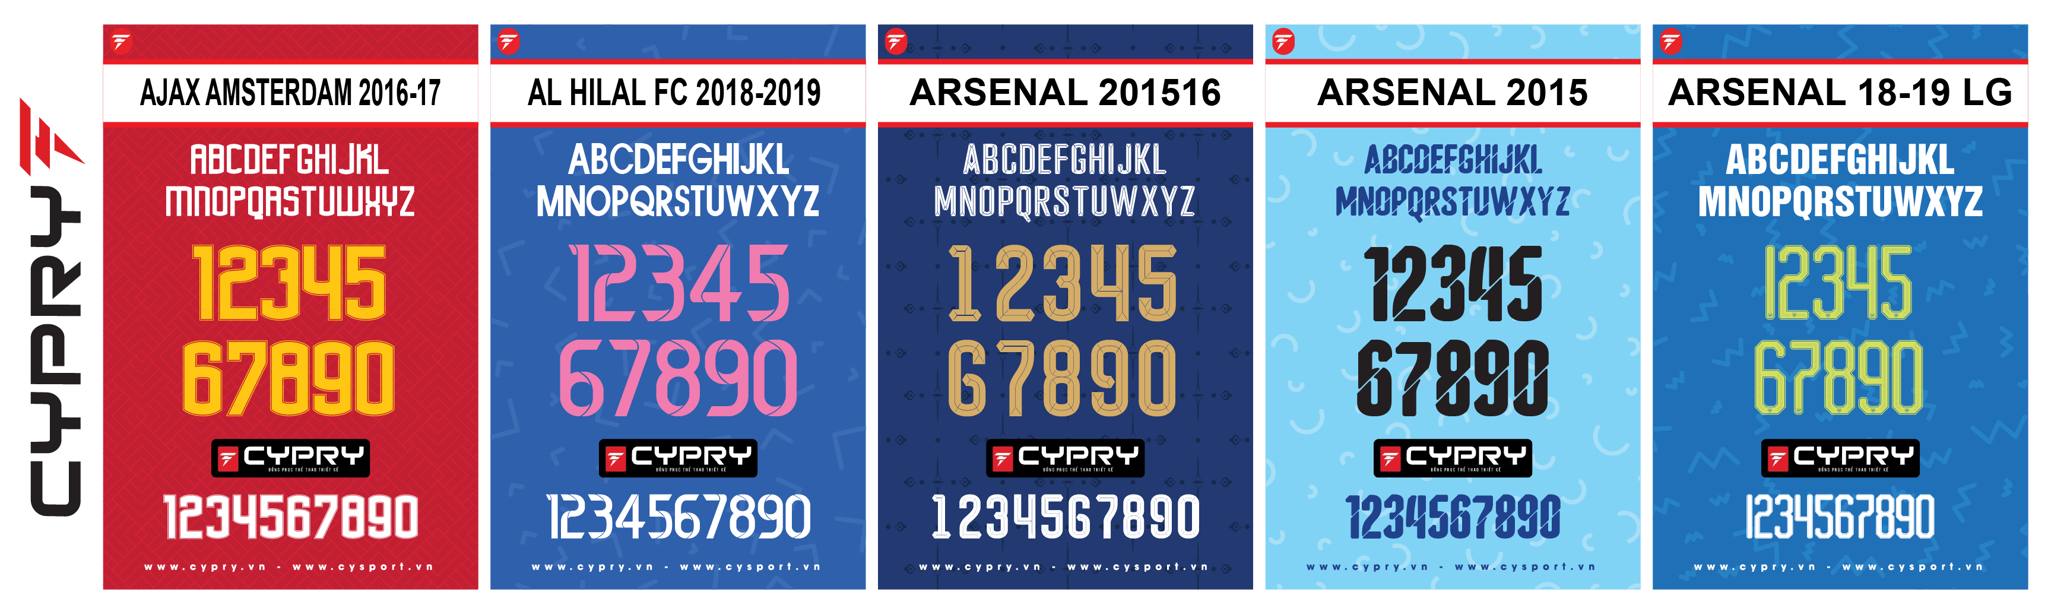 FONT AJAX AMSTERDAM 2016 2017, FONT AJAX AMSTERDAM 2016-17, FONT AL HILAL FC 2018-2019,  FONT AL HILAL FC 2018-2019, Font Arsenal 201516, Font Arsenal 2015 2016, Font Arsenal 2015, Font Arsenal 18-19,